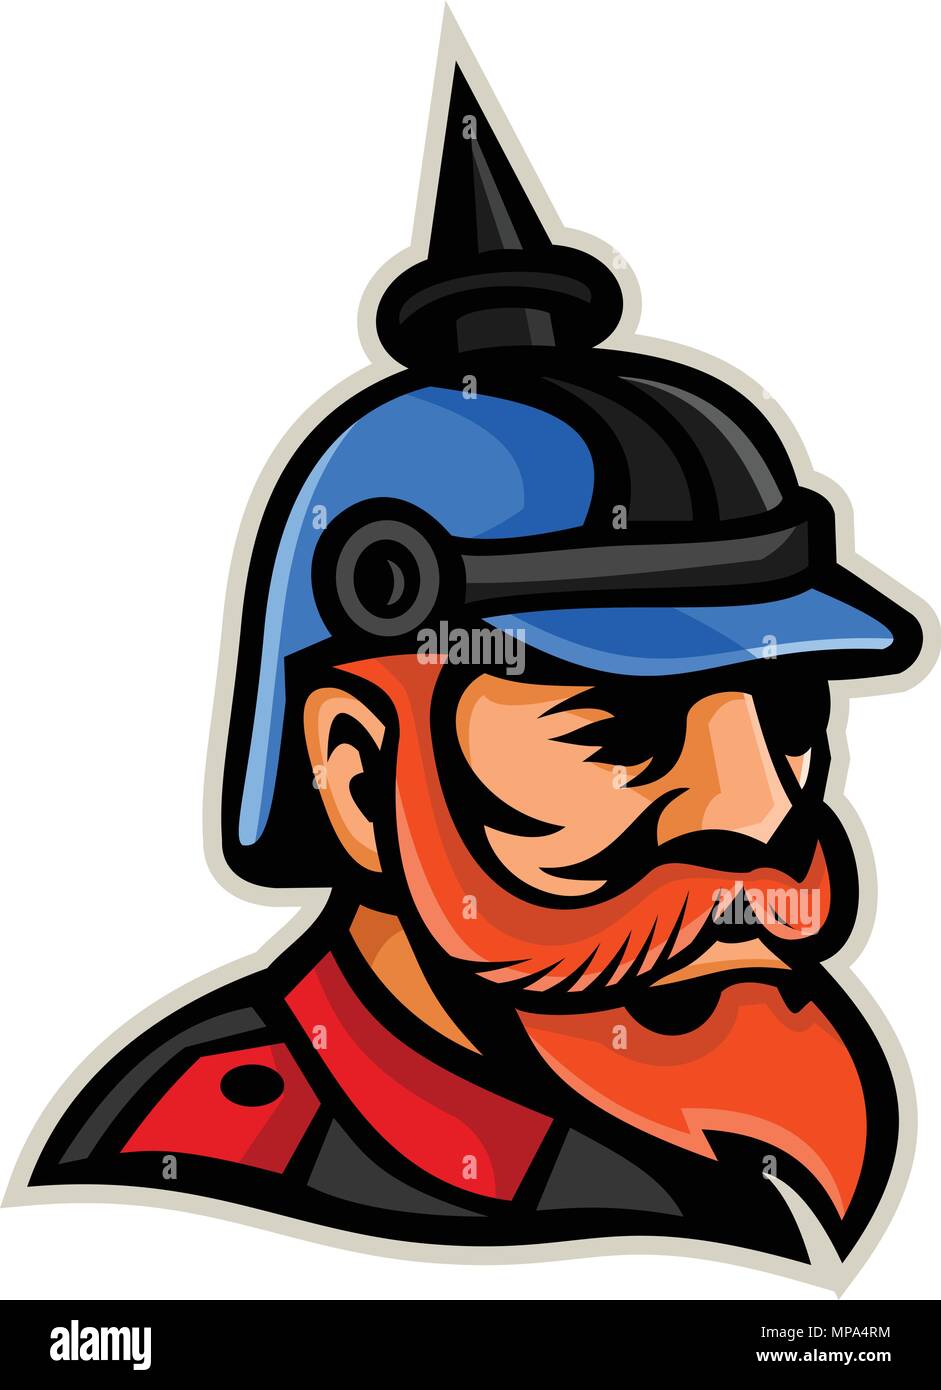 Icona di mascotte illustrazione della testa di un ufficiale prussiano che indossa un pickelhaube o pickelhelm, un spiked casco indossato diciannovesimo e ventesimo secoli da Illustrazione Vettoriale